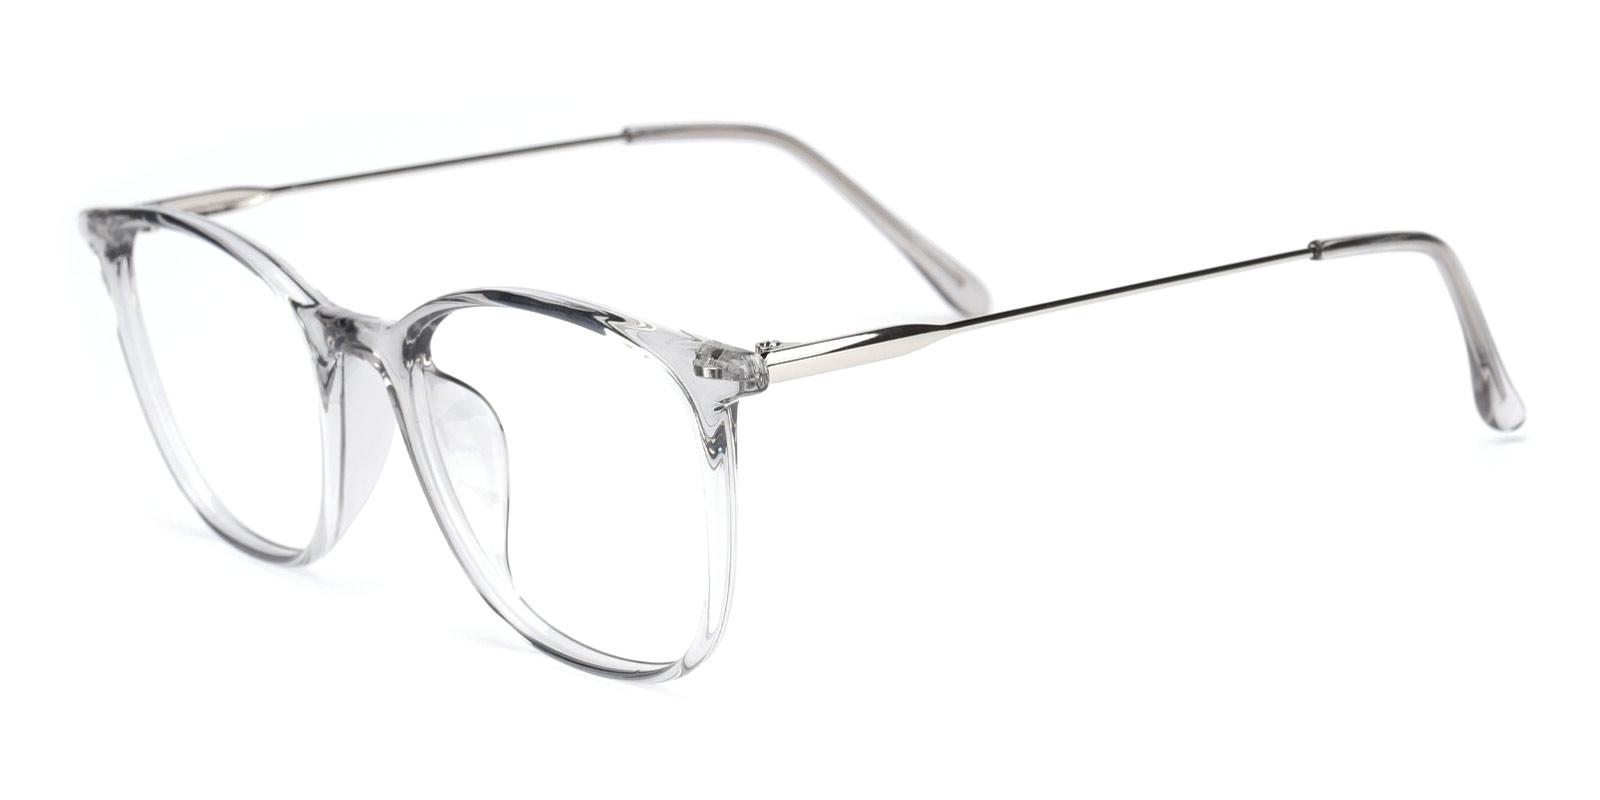 Who-Gray-Square-TR-Eyeglasses-detail